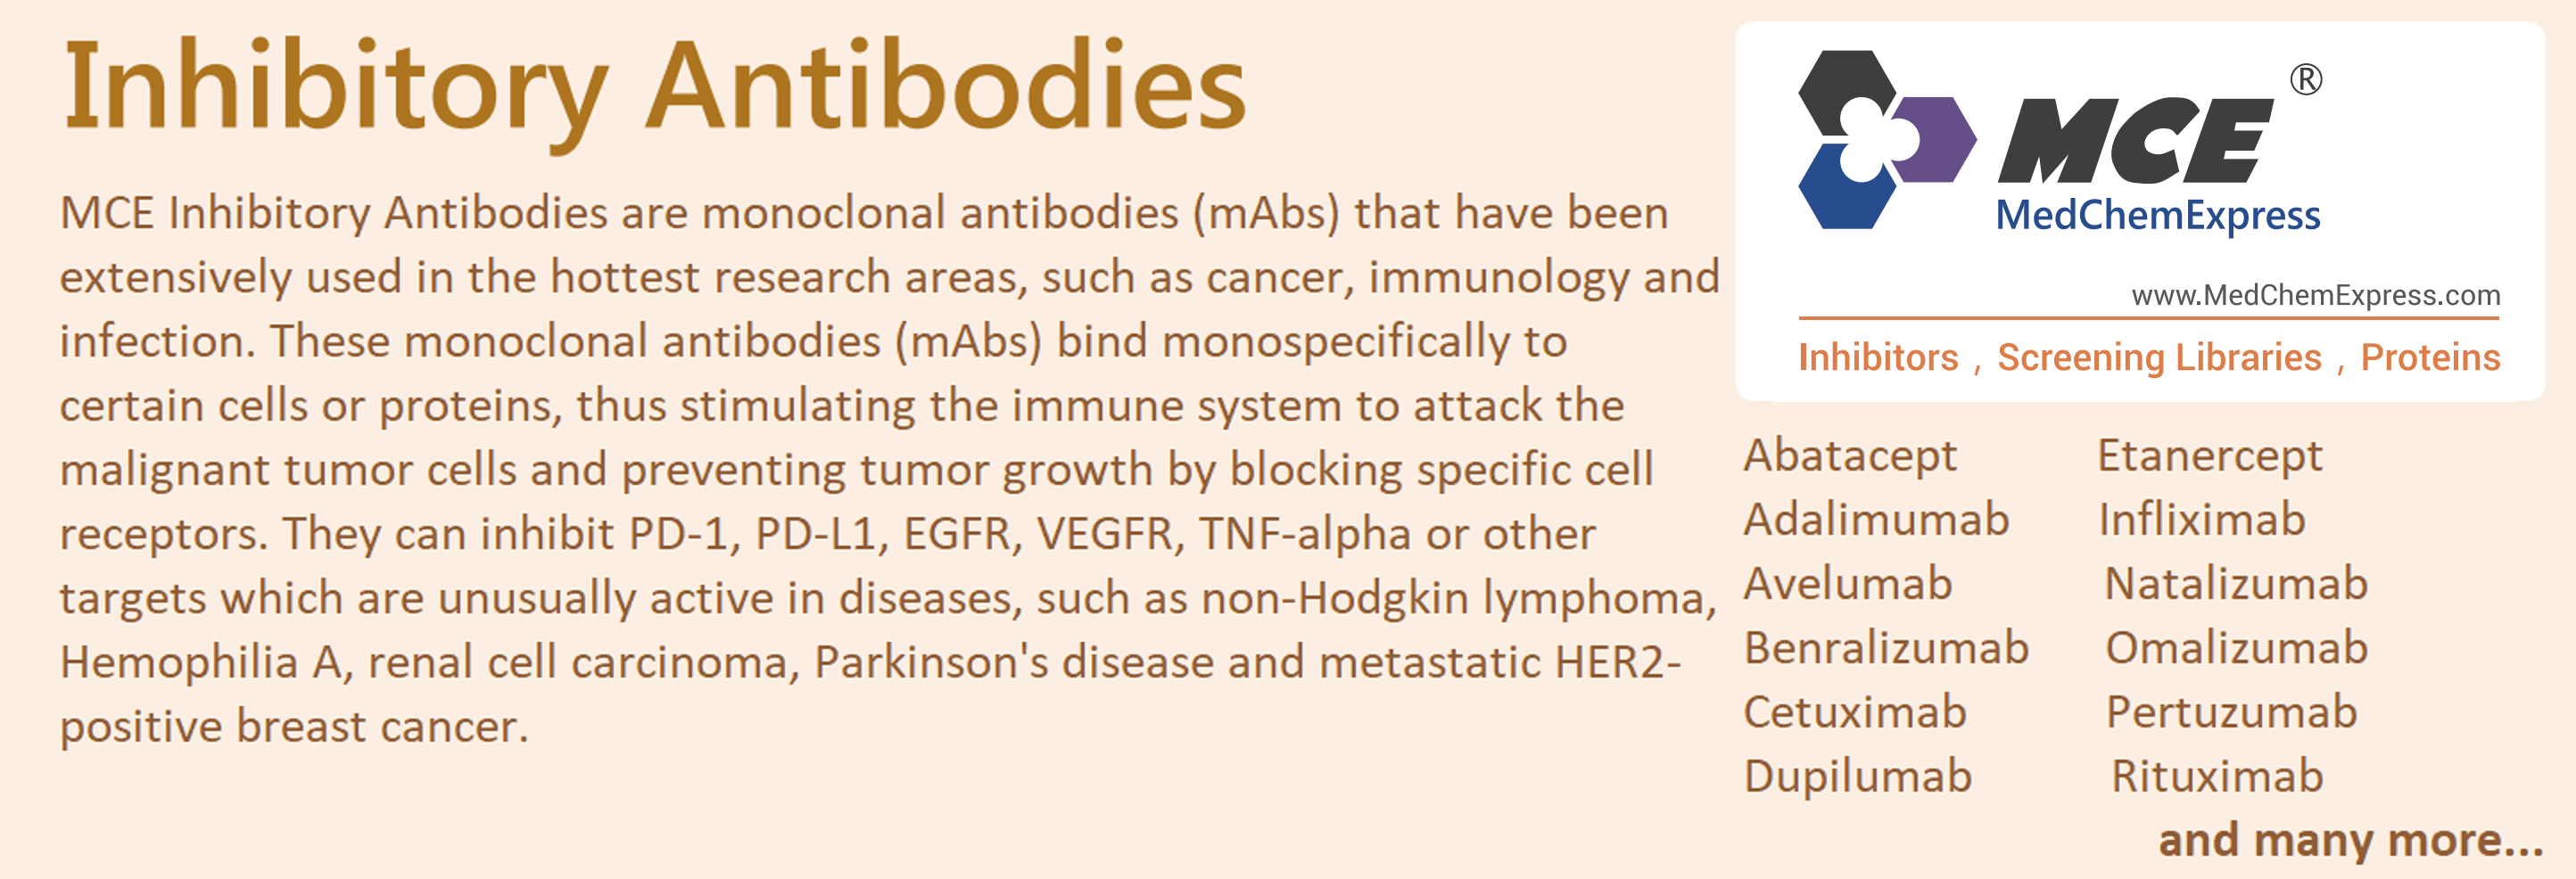 MCE Inhibitory Antibodies